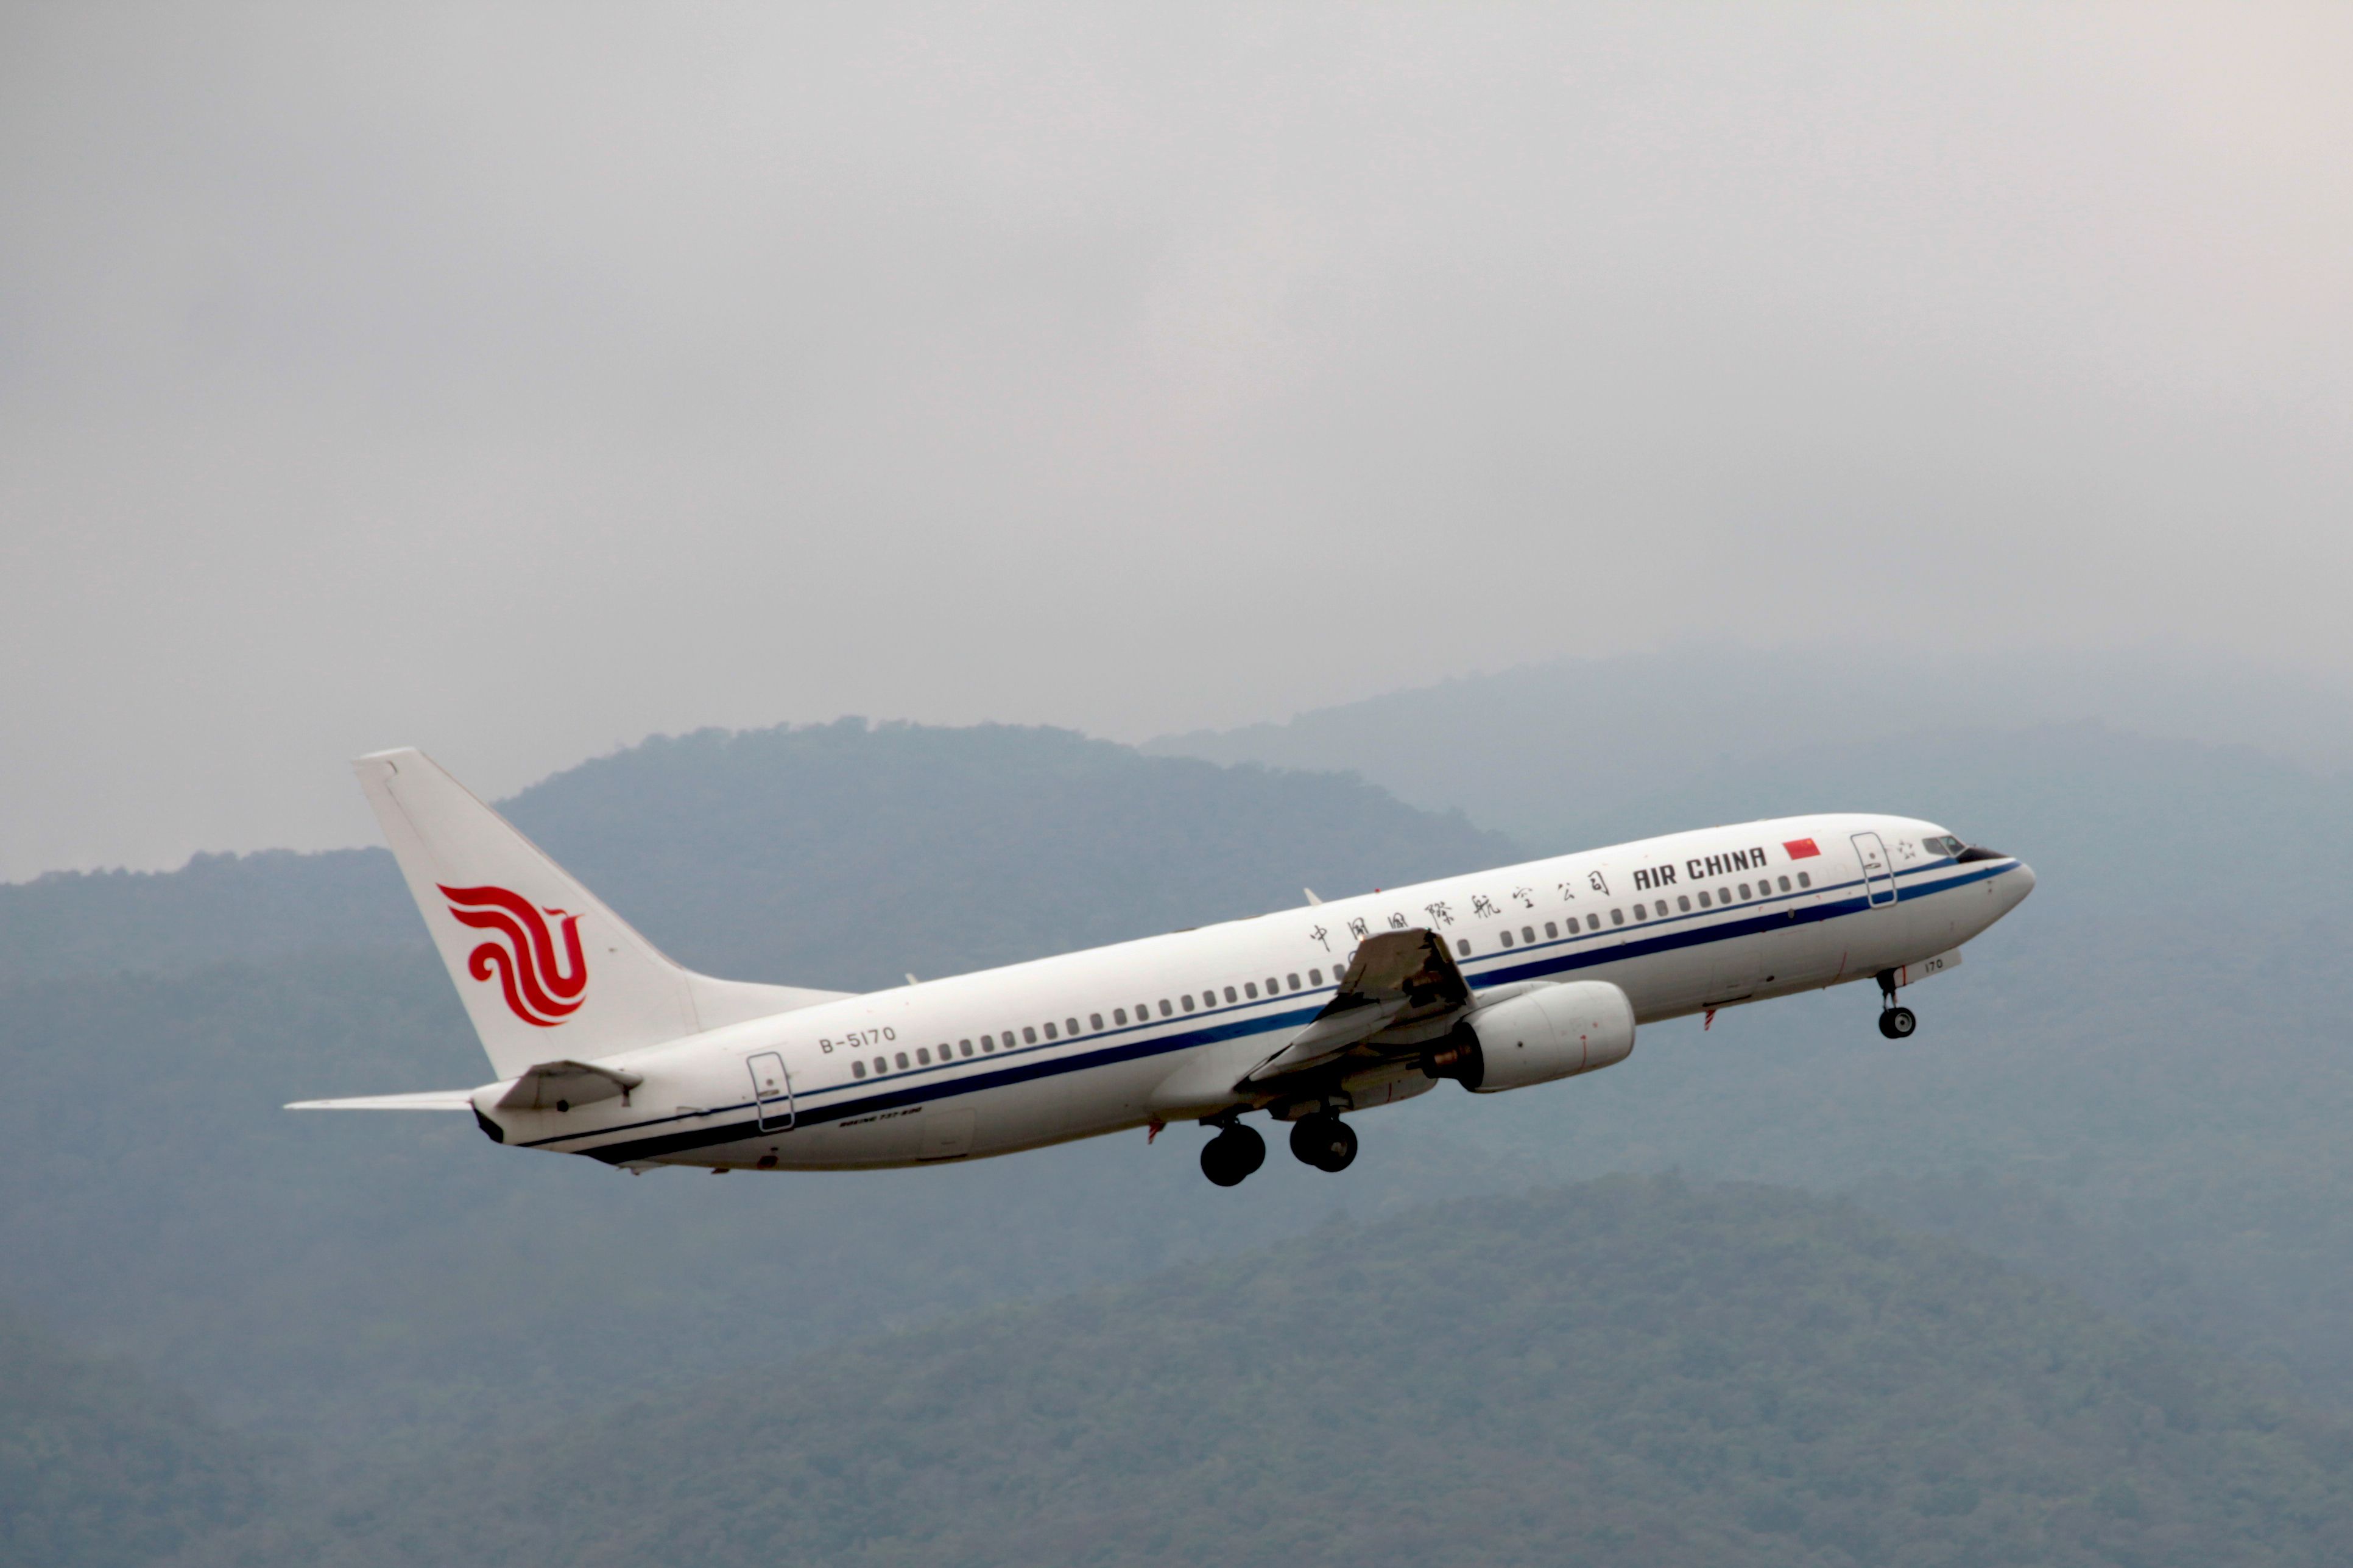 Air China Boeing 737-800 departing BKK shutterstock_1062860357